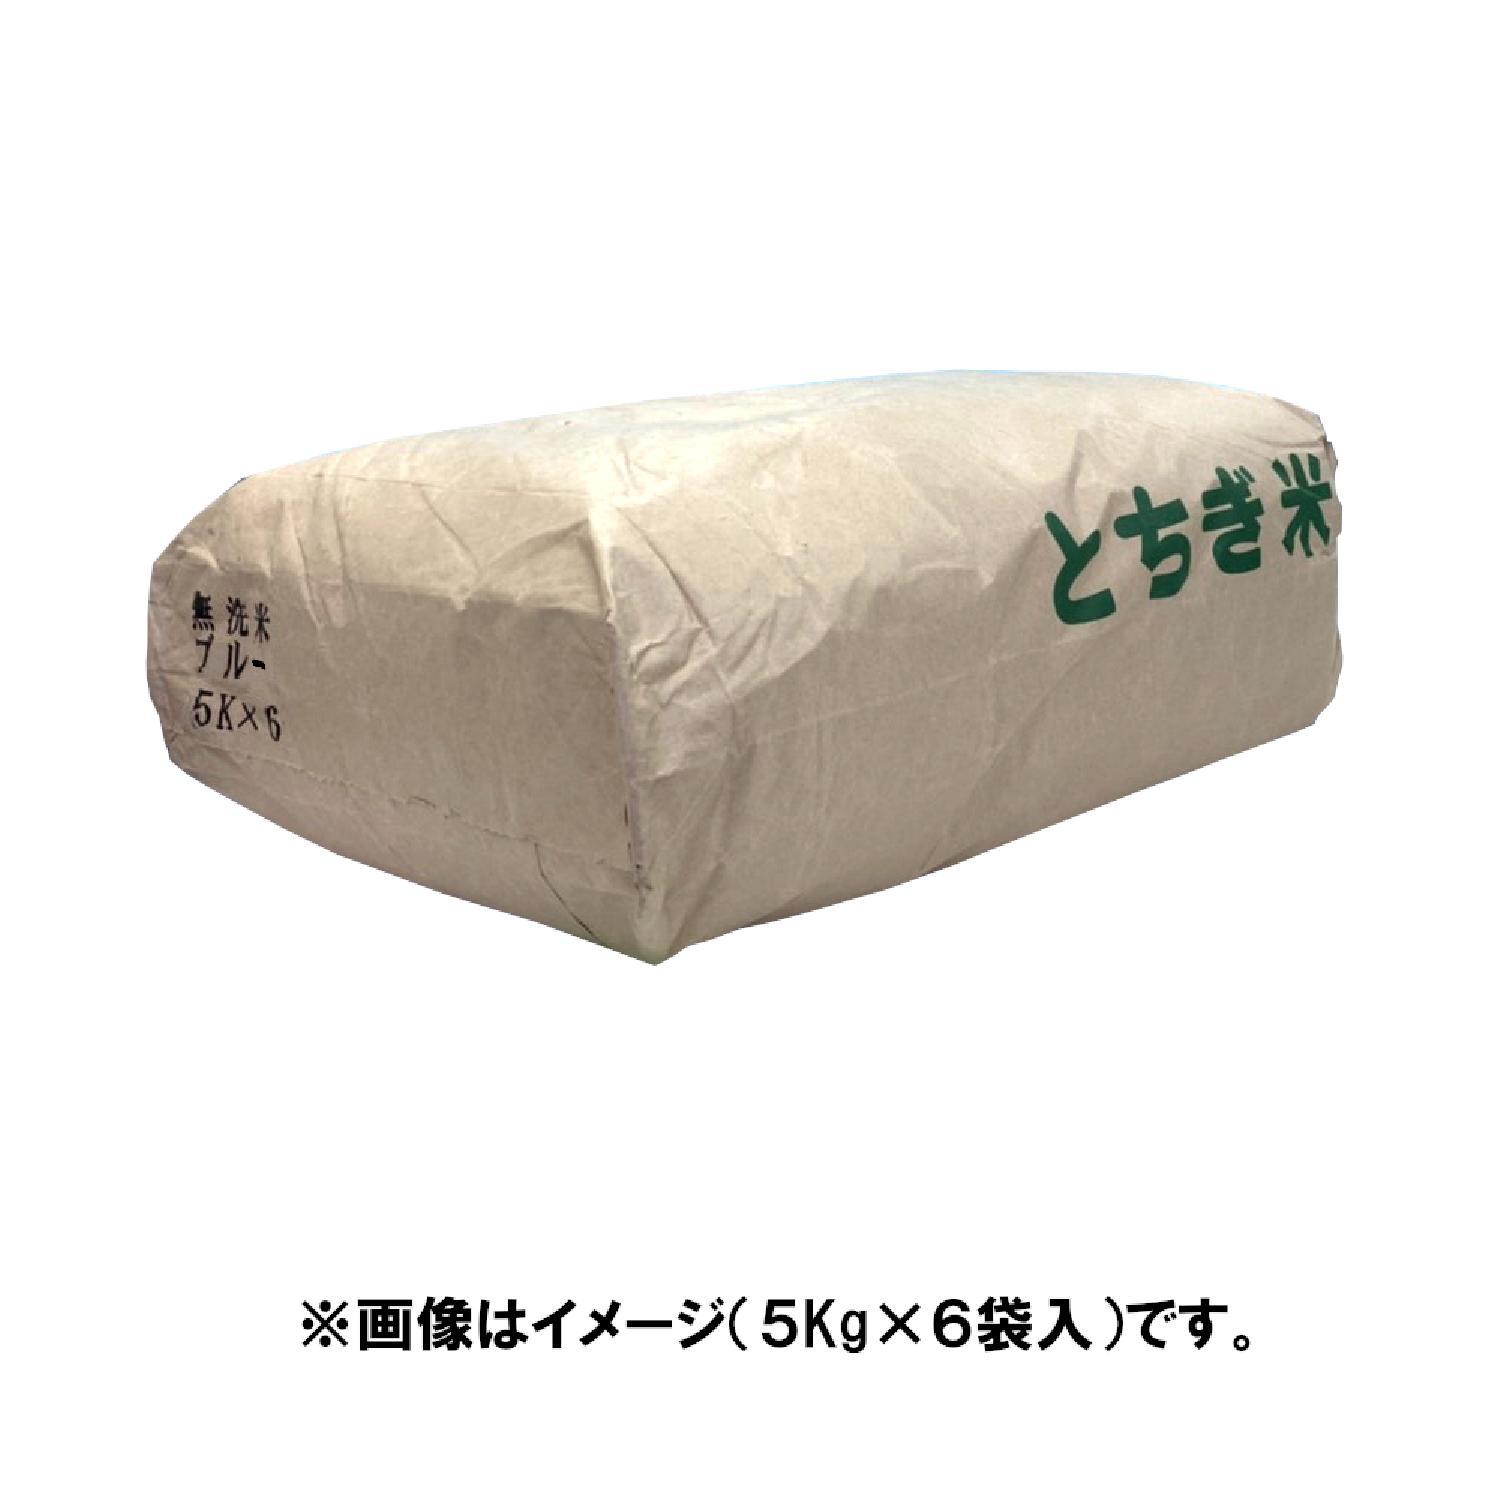 無洗米 ブルー 国内産 5kg×6袋 合計30kg [送料無料]※配送時間の指定は出来ません_画像_2